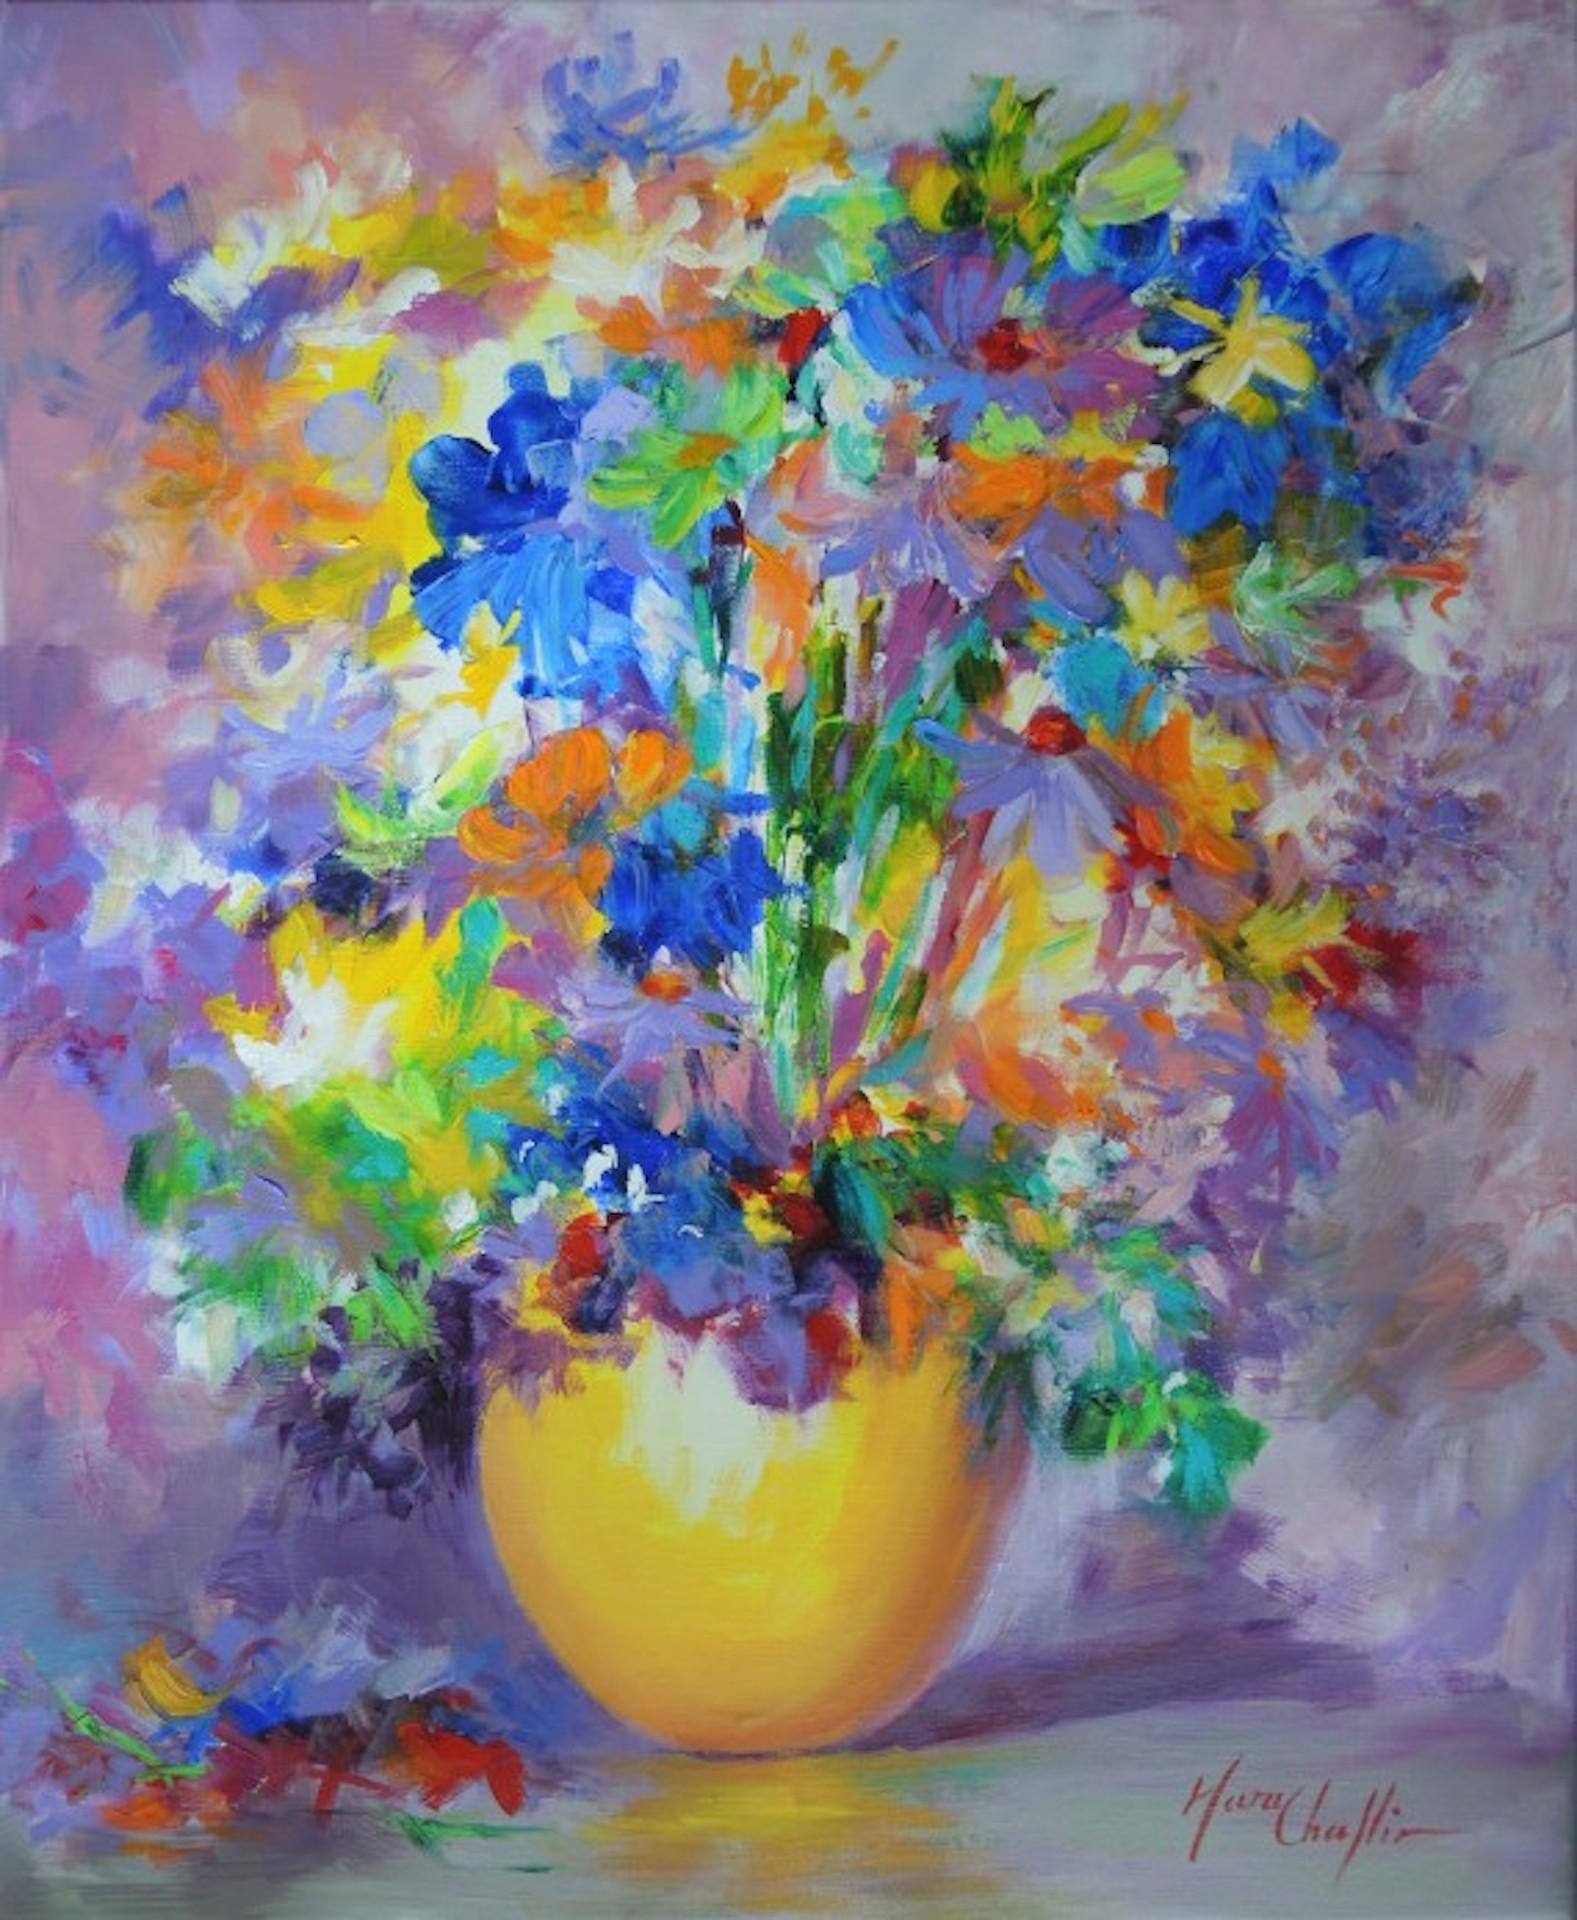 Septemberglänzender, Blumenstrauß in einer gelben Vase, Stillleben-Blumenkunst, Impressionismus